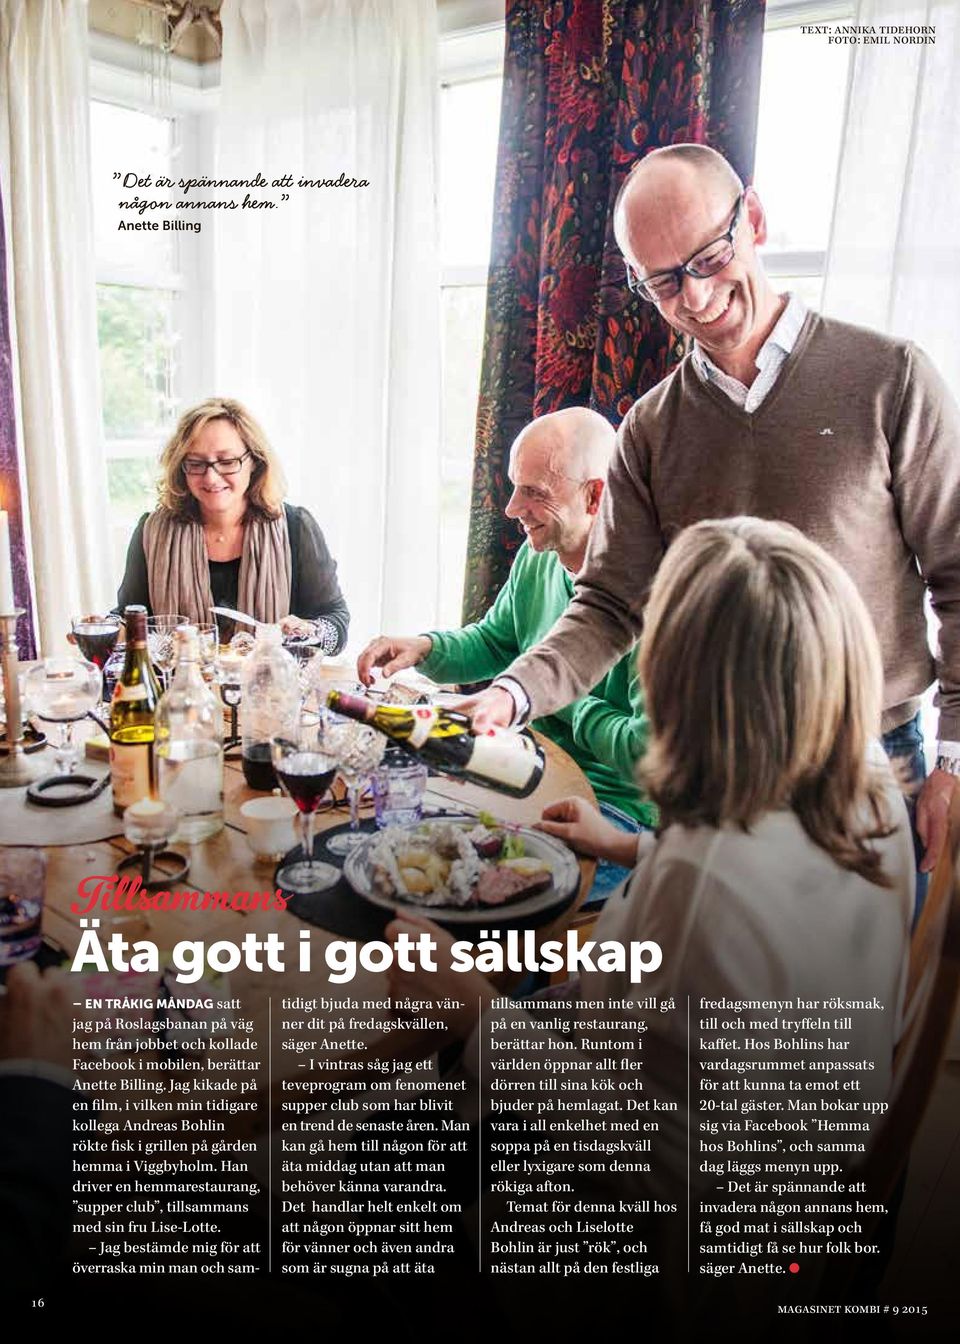 Jag kikade på en film, i vilken min tidigare kollega Andreas Bohlin rökte fisk i grillen på gården hemma i Viggbyholm. Han driver en hemmarestaurang, supper club, tillsammans med sin fru Lise-Lotte.